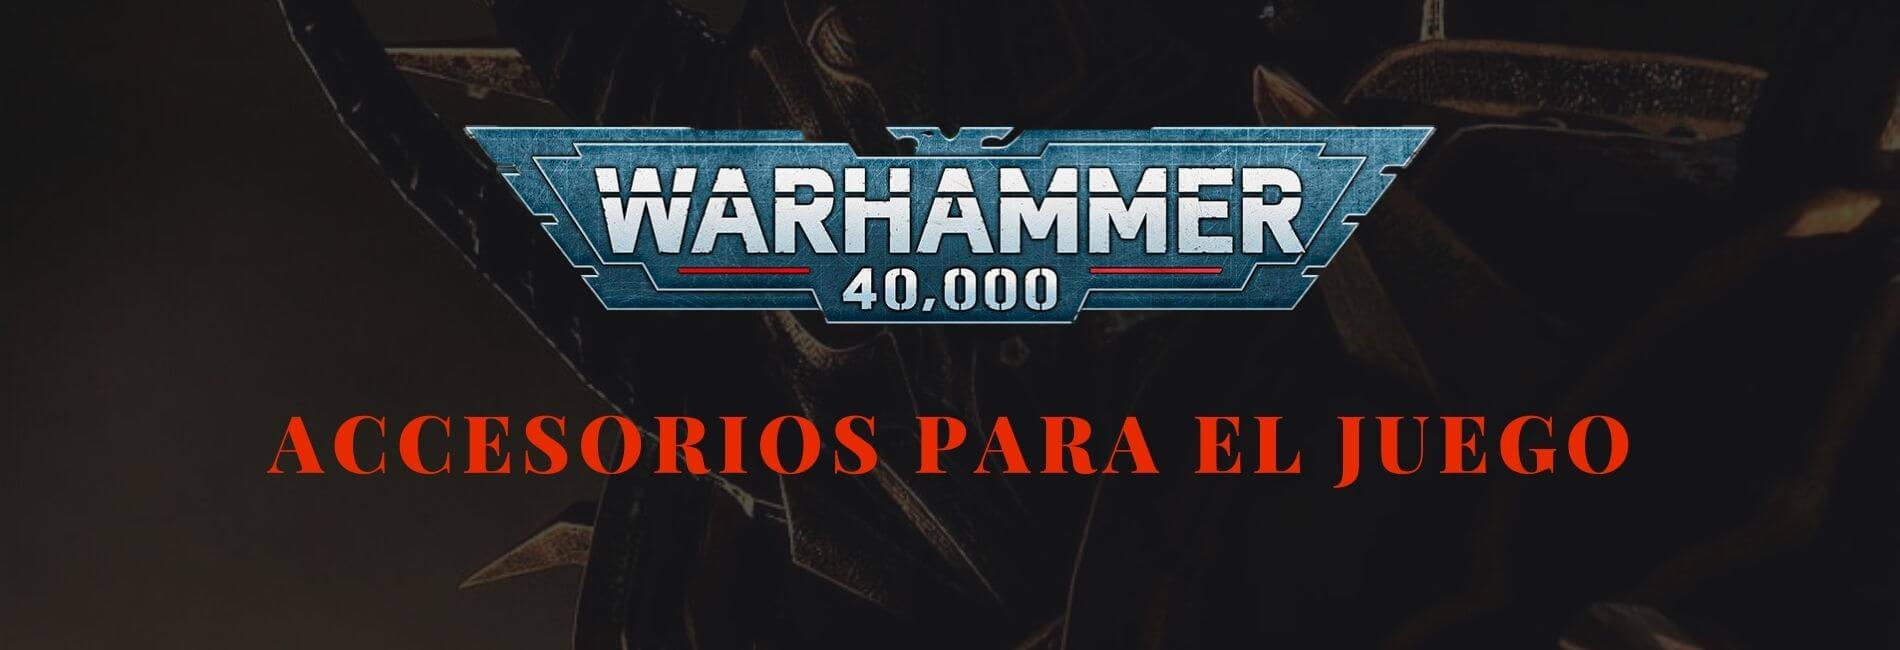 Accesorios Warhammer 40000